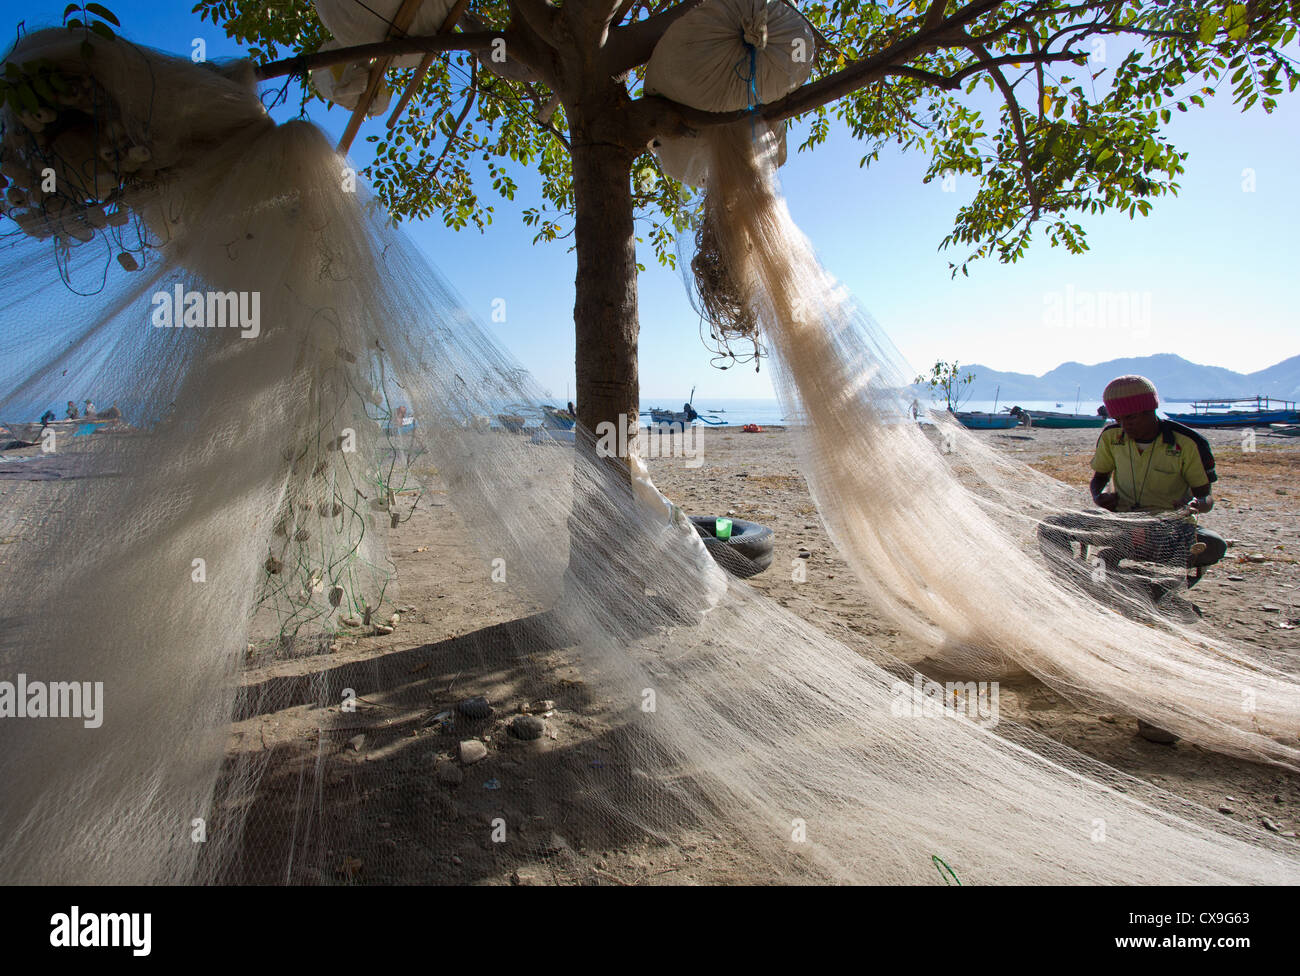 L'homme son raccommodage des filets de pêche sur une plage, à Dili, au Timor oriental Banque D'Images